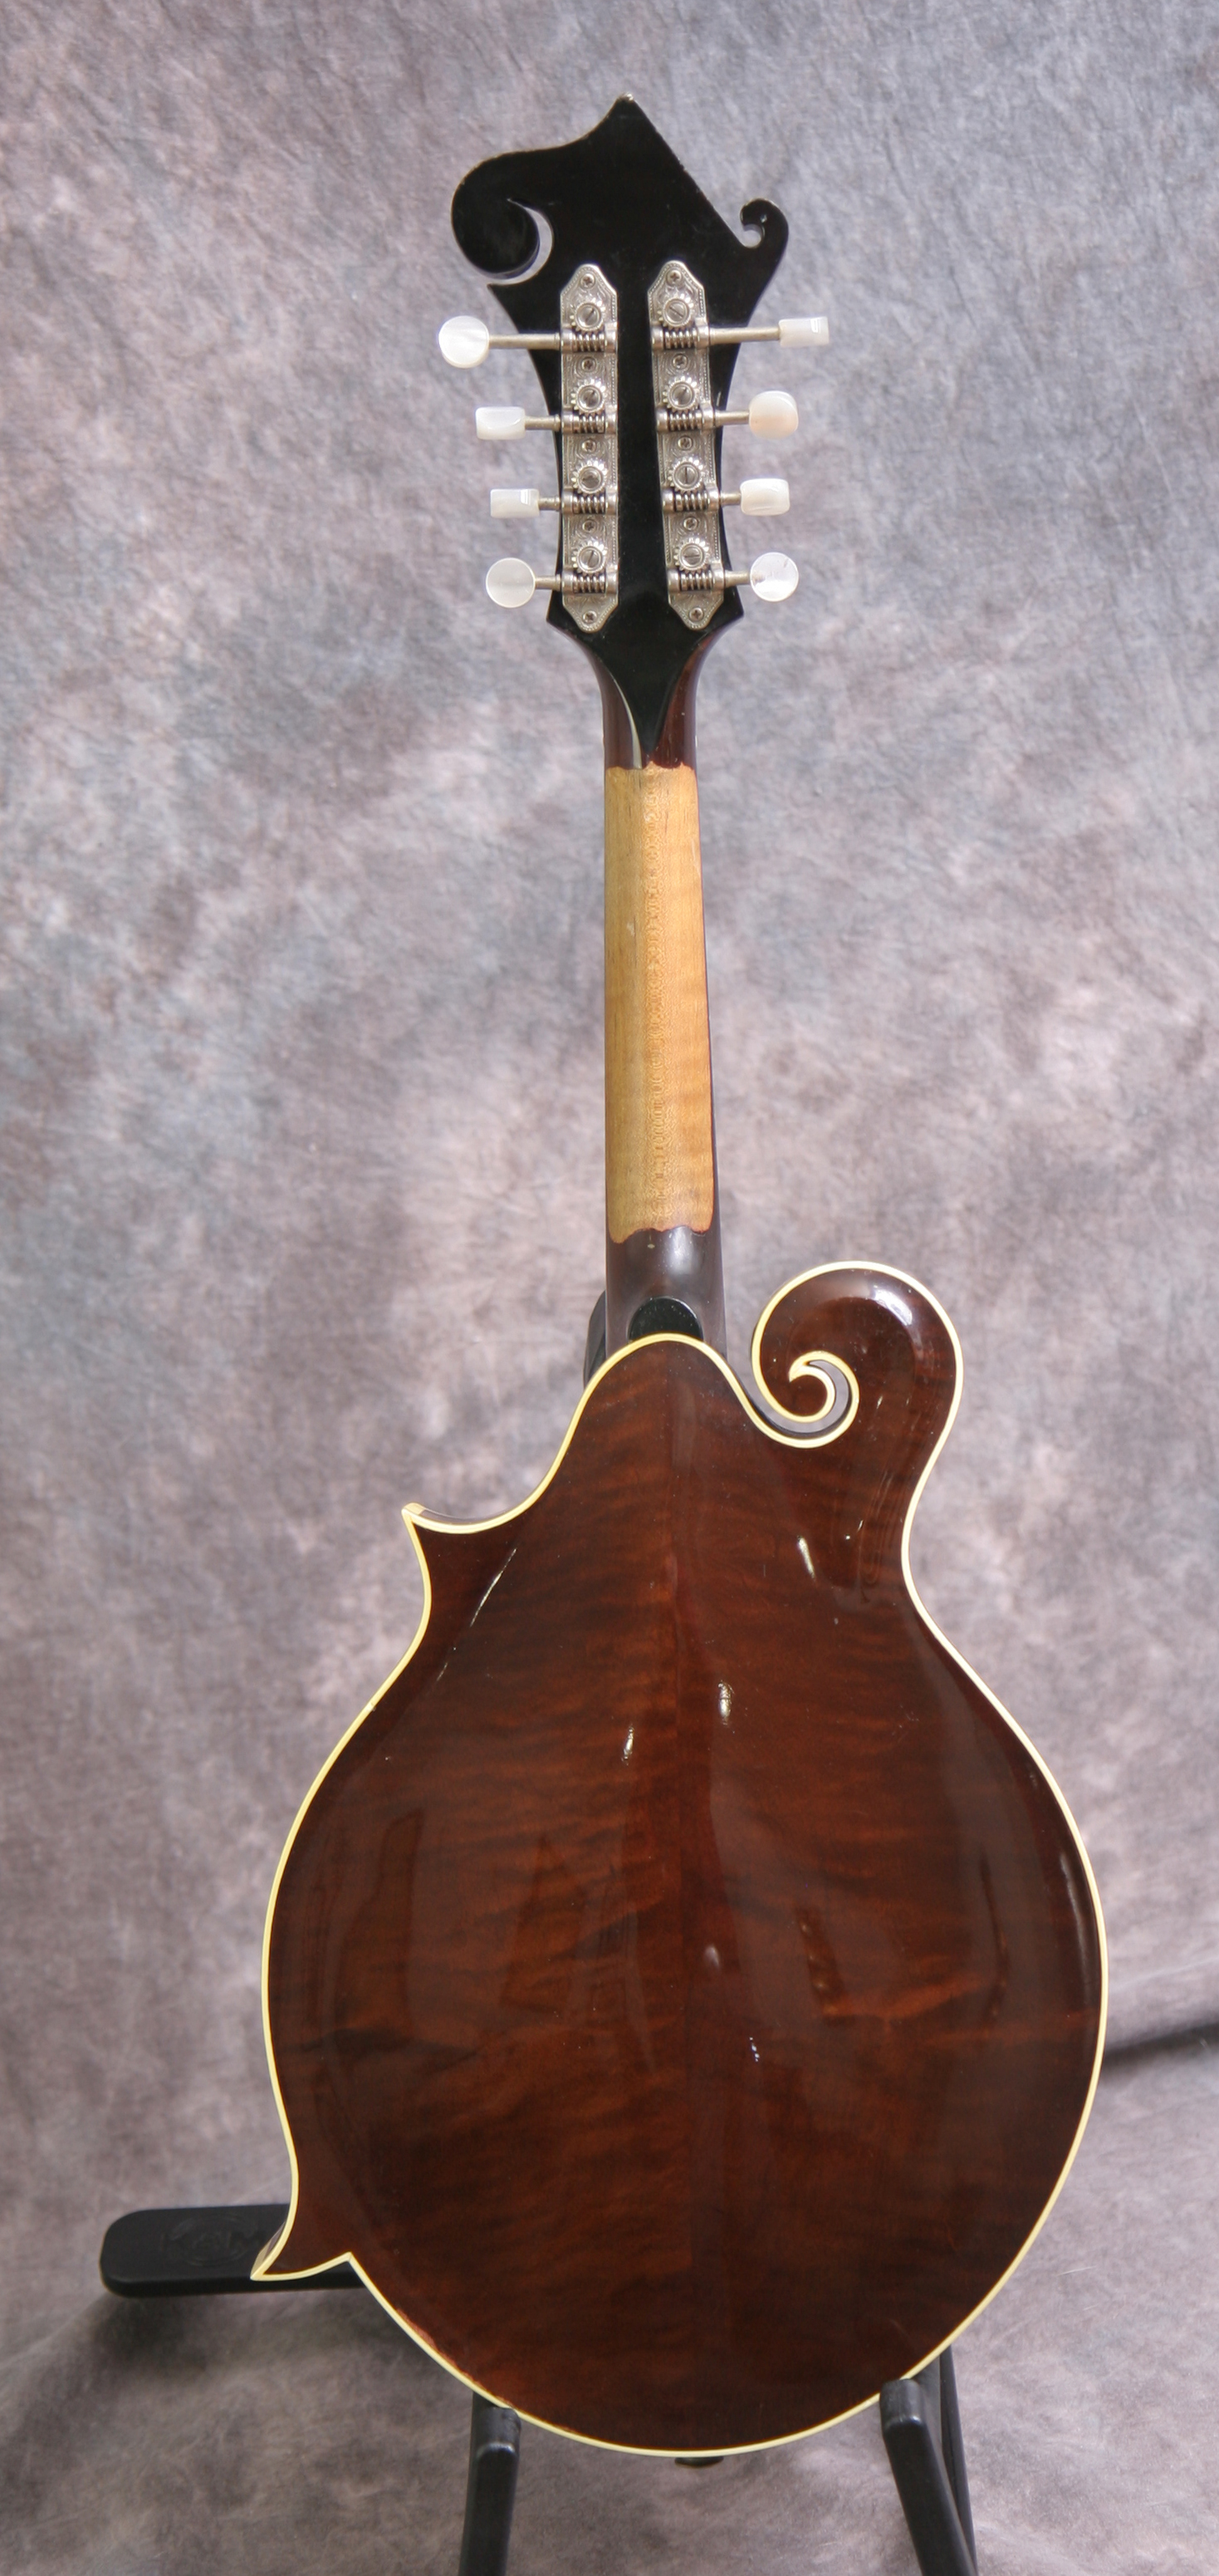 FMP 137-1457 Jaccard® Mandoline Slicer, folding